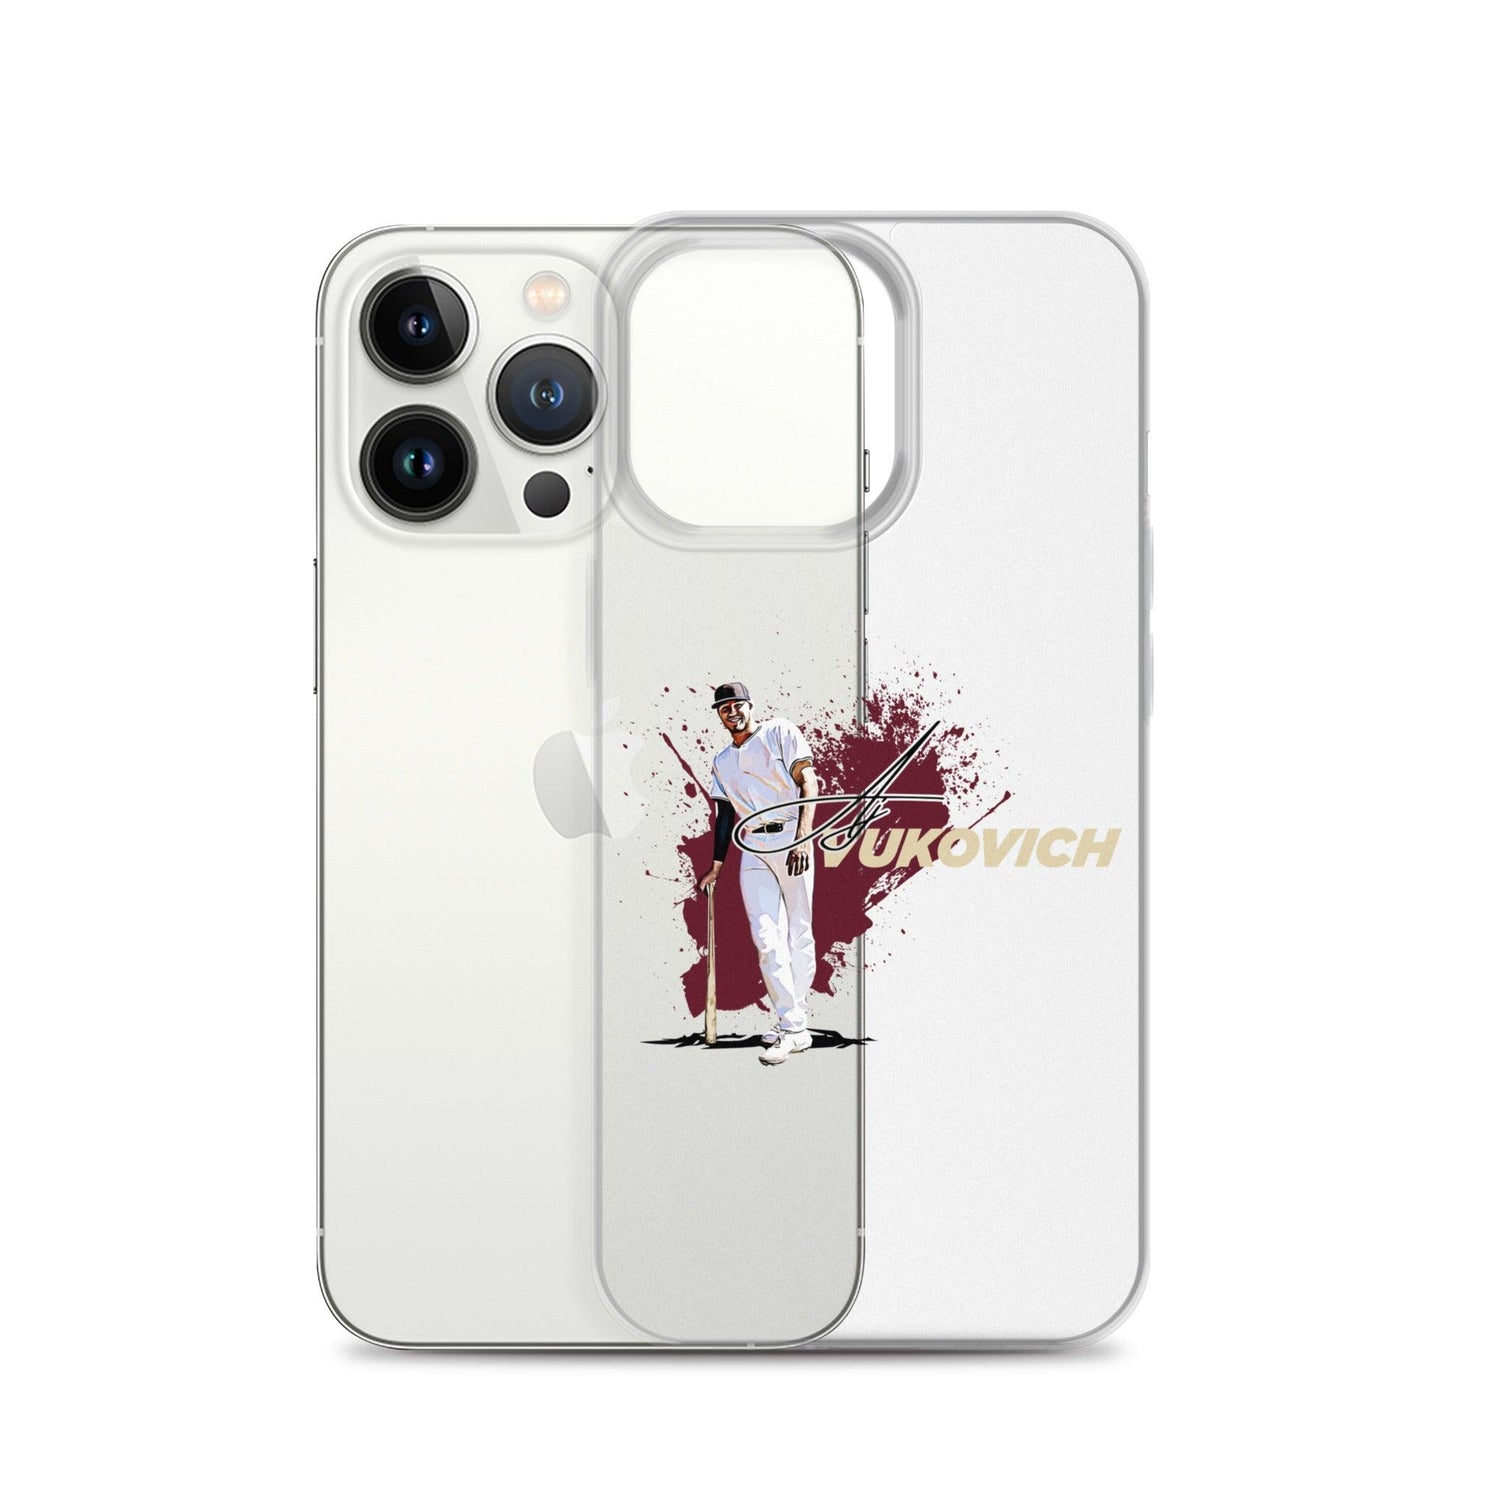 AJ Vukovich “Primetime” iPhone Case - Fan Arch